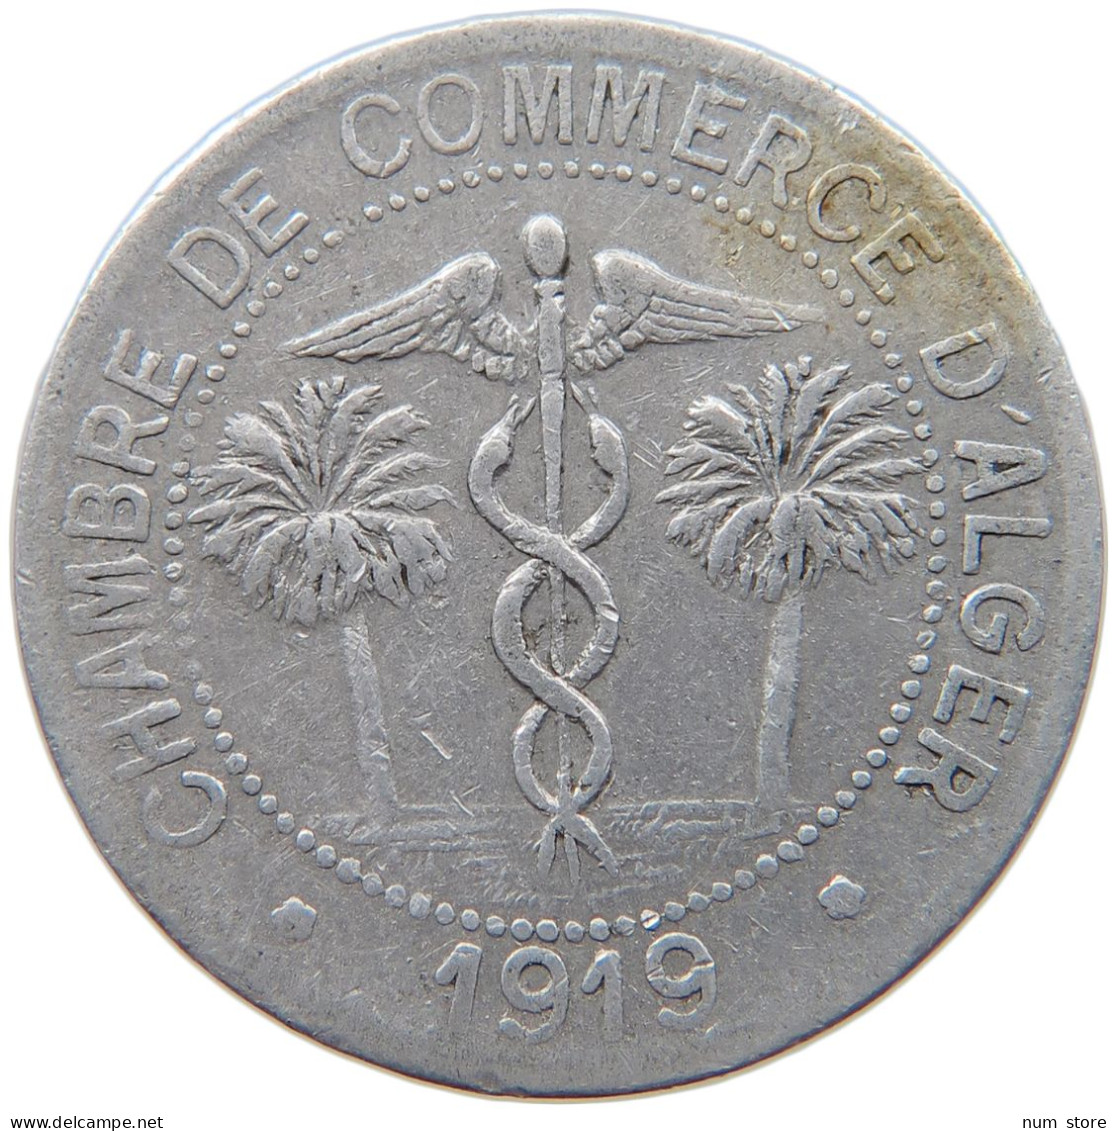 ALGERIA 10 CENTIMES 1919  #MA 065443 - Algérie